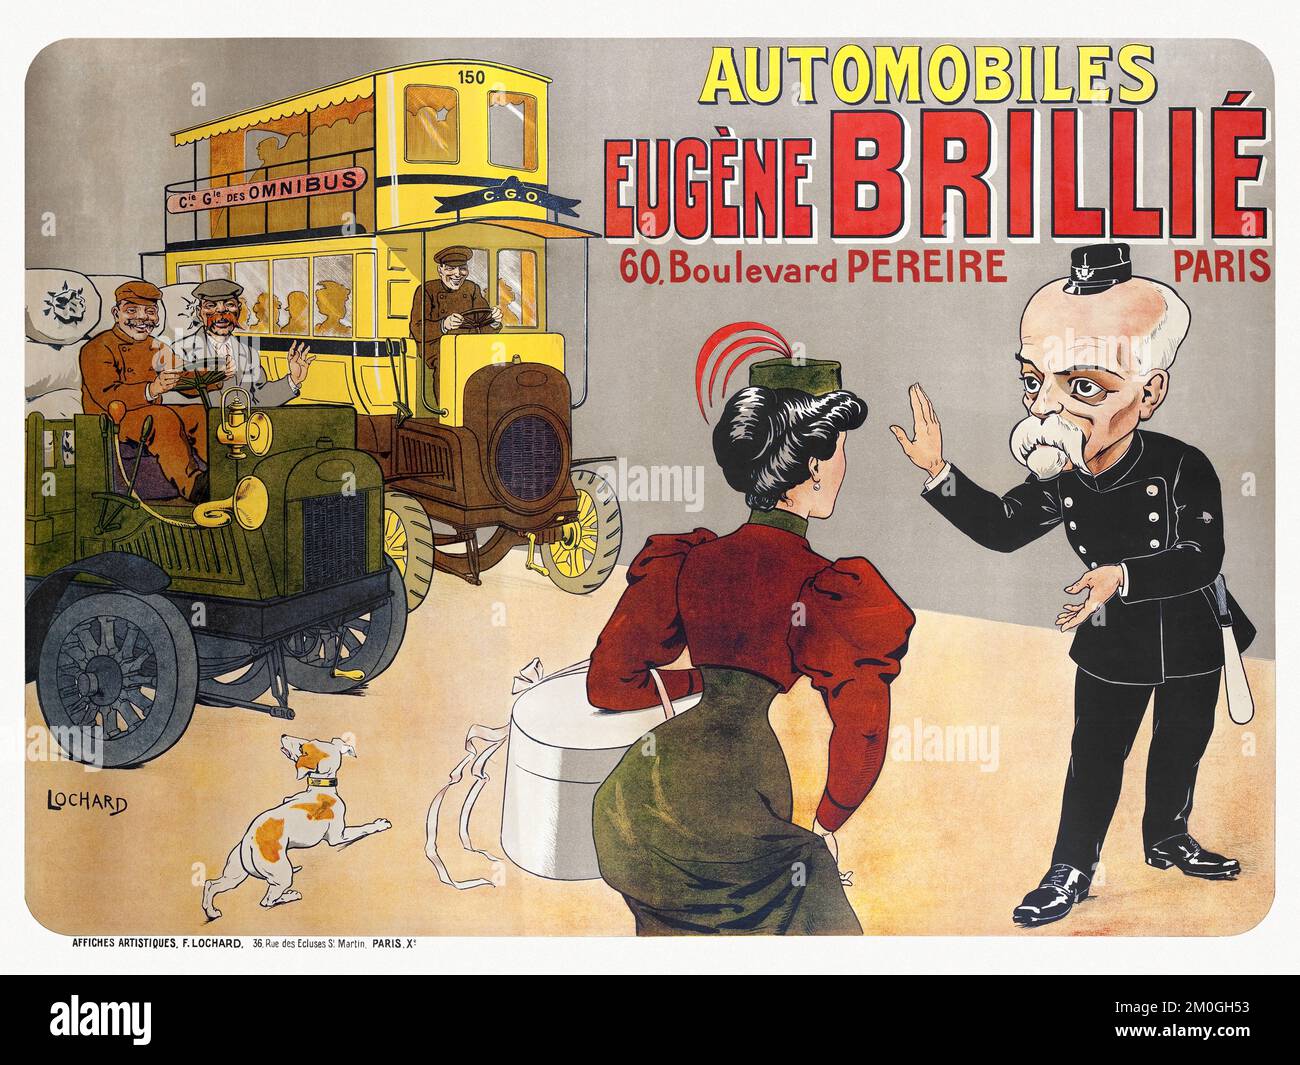 Automobiles Eugène Brillié, 60 boulevard Pereire Paris by Felix Lochard (1874-1951). Poster published in 1905 in France. Stock Photo